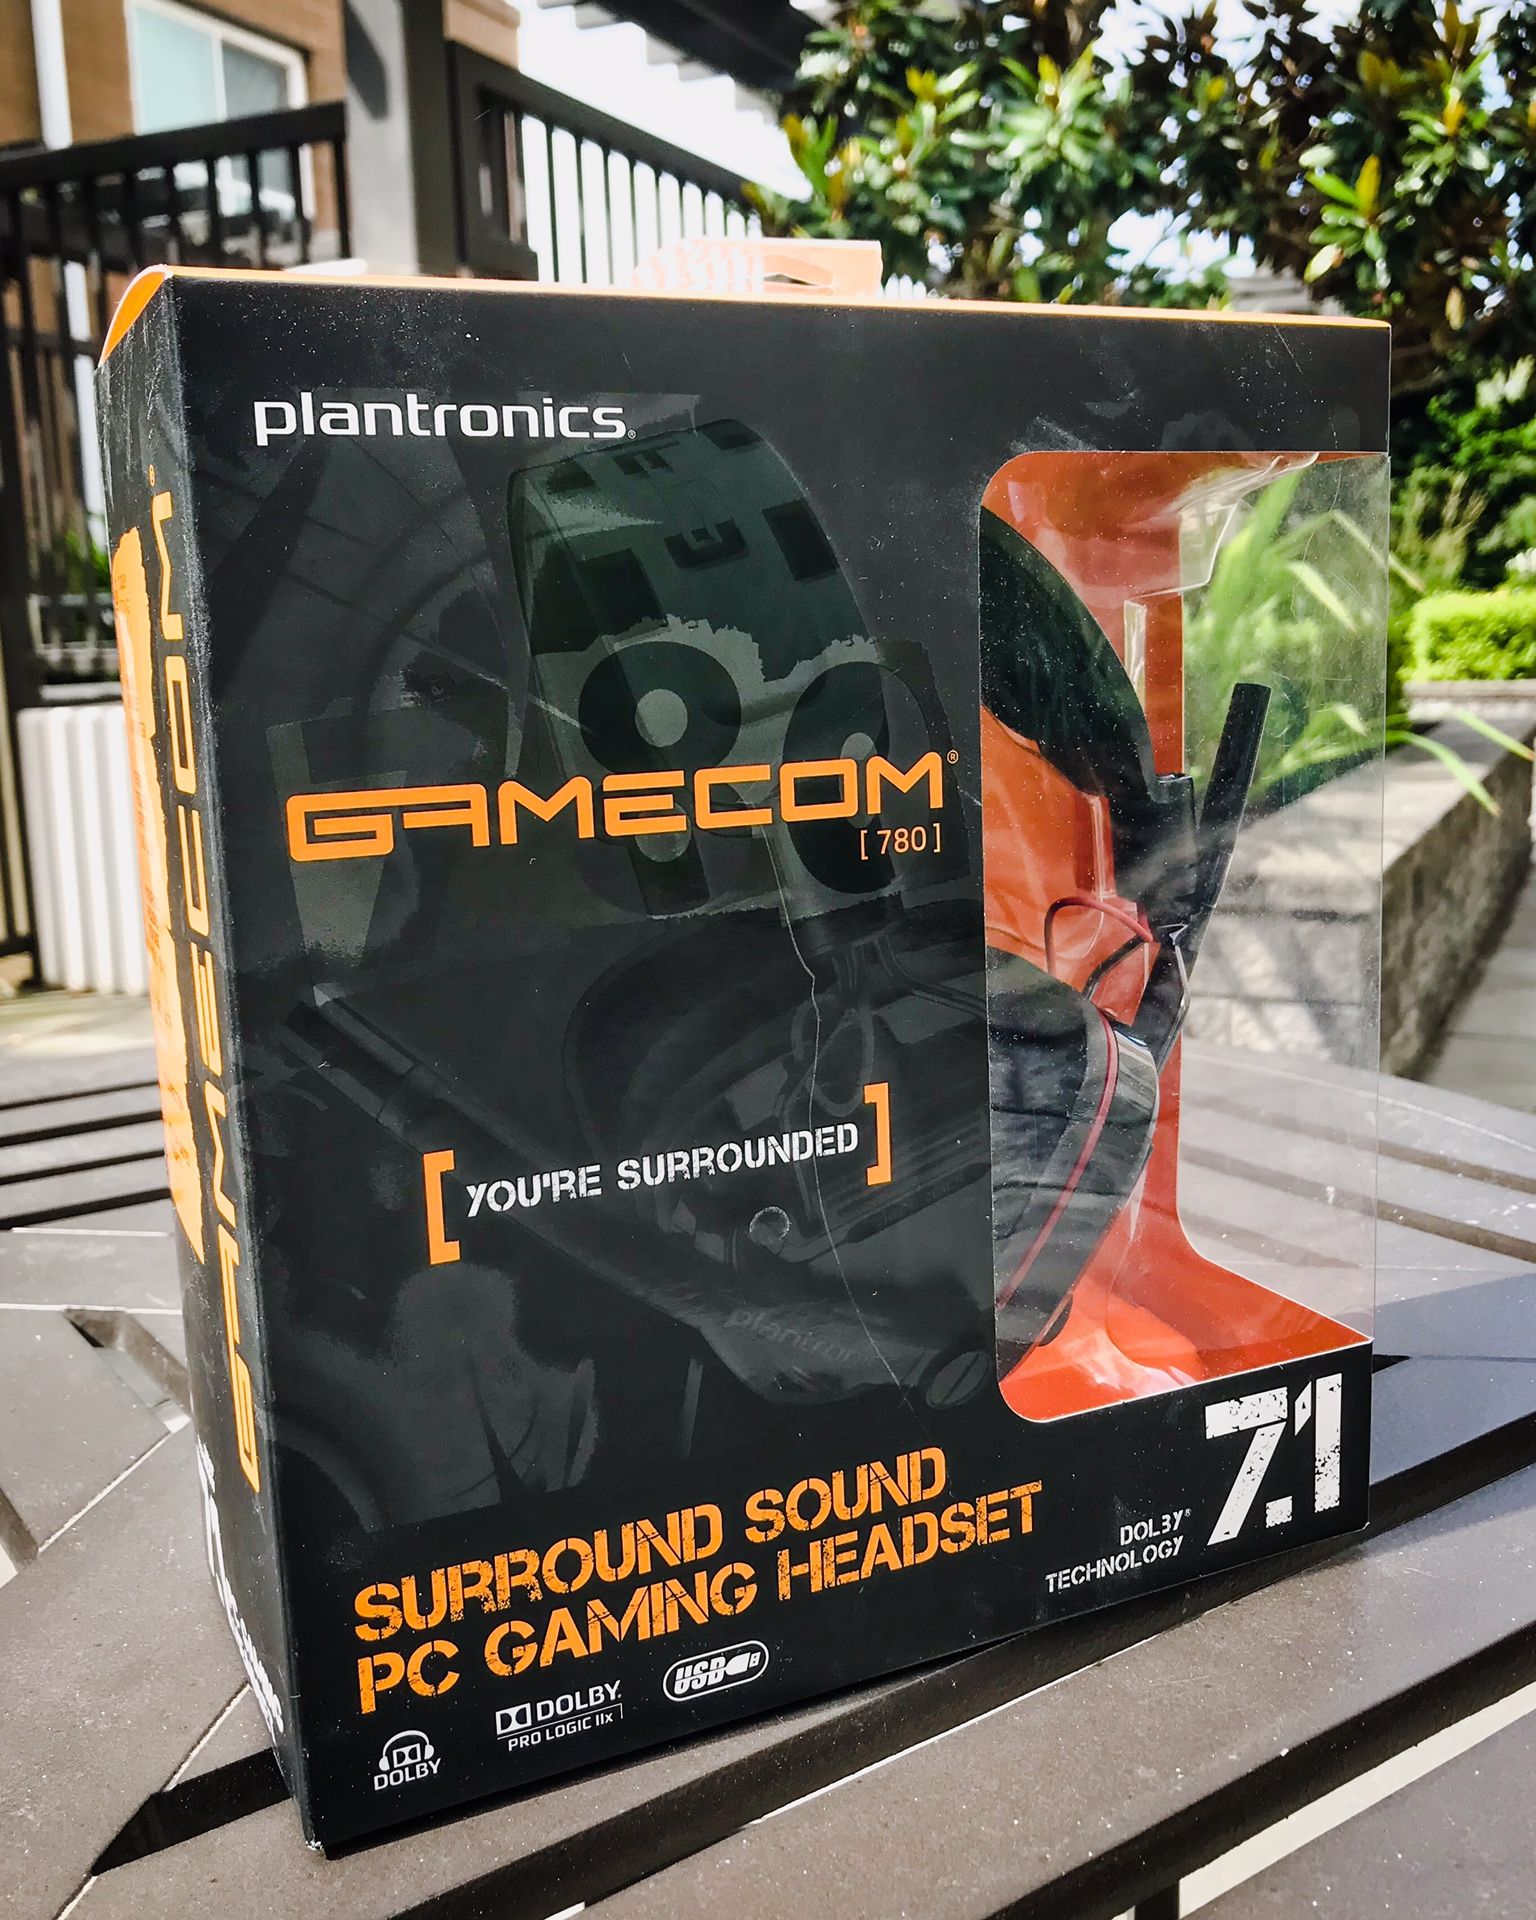 Plantronics Gamecom [780] Surround Sound